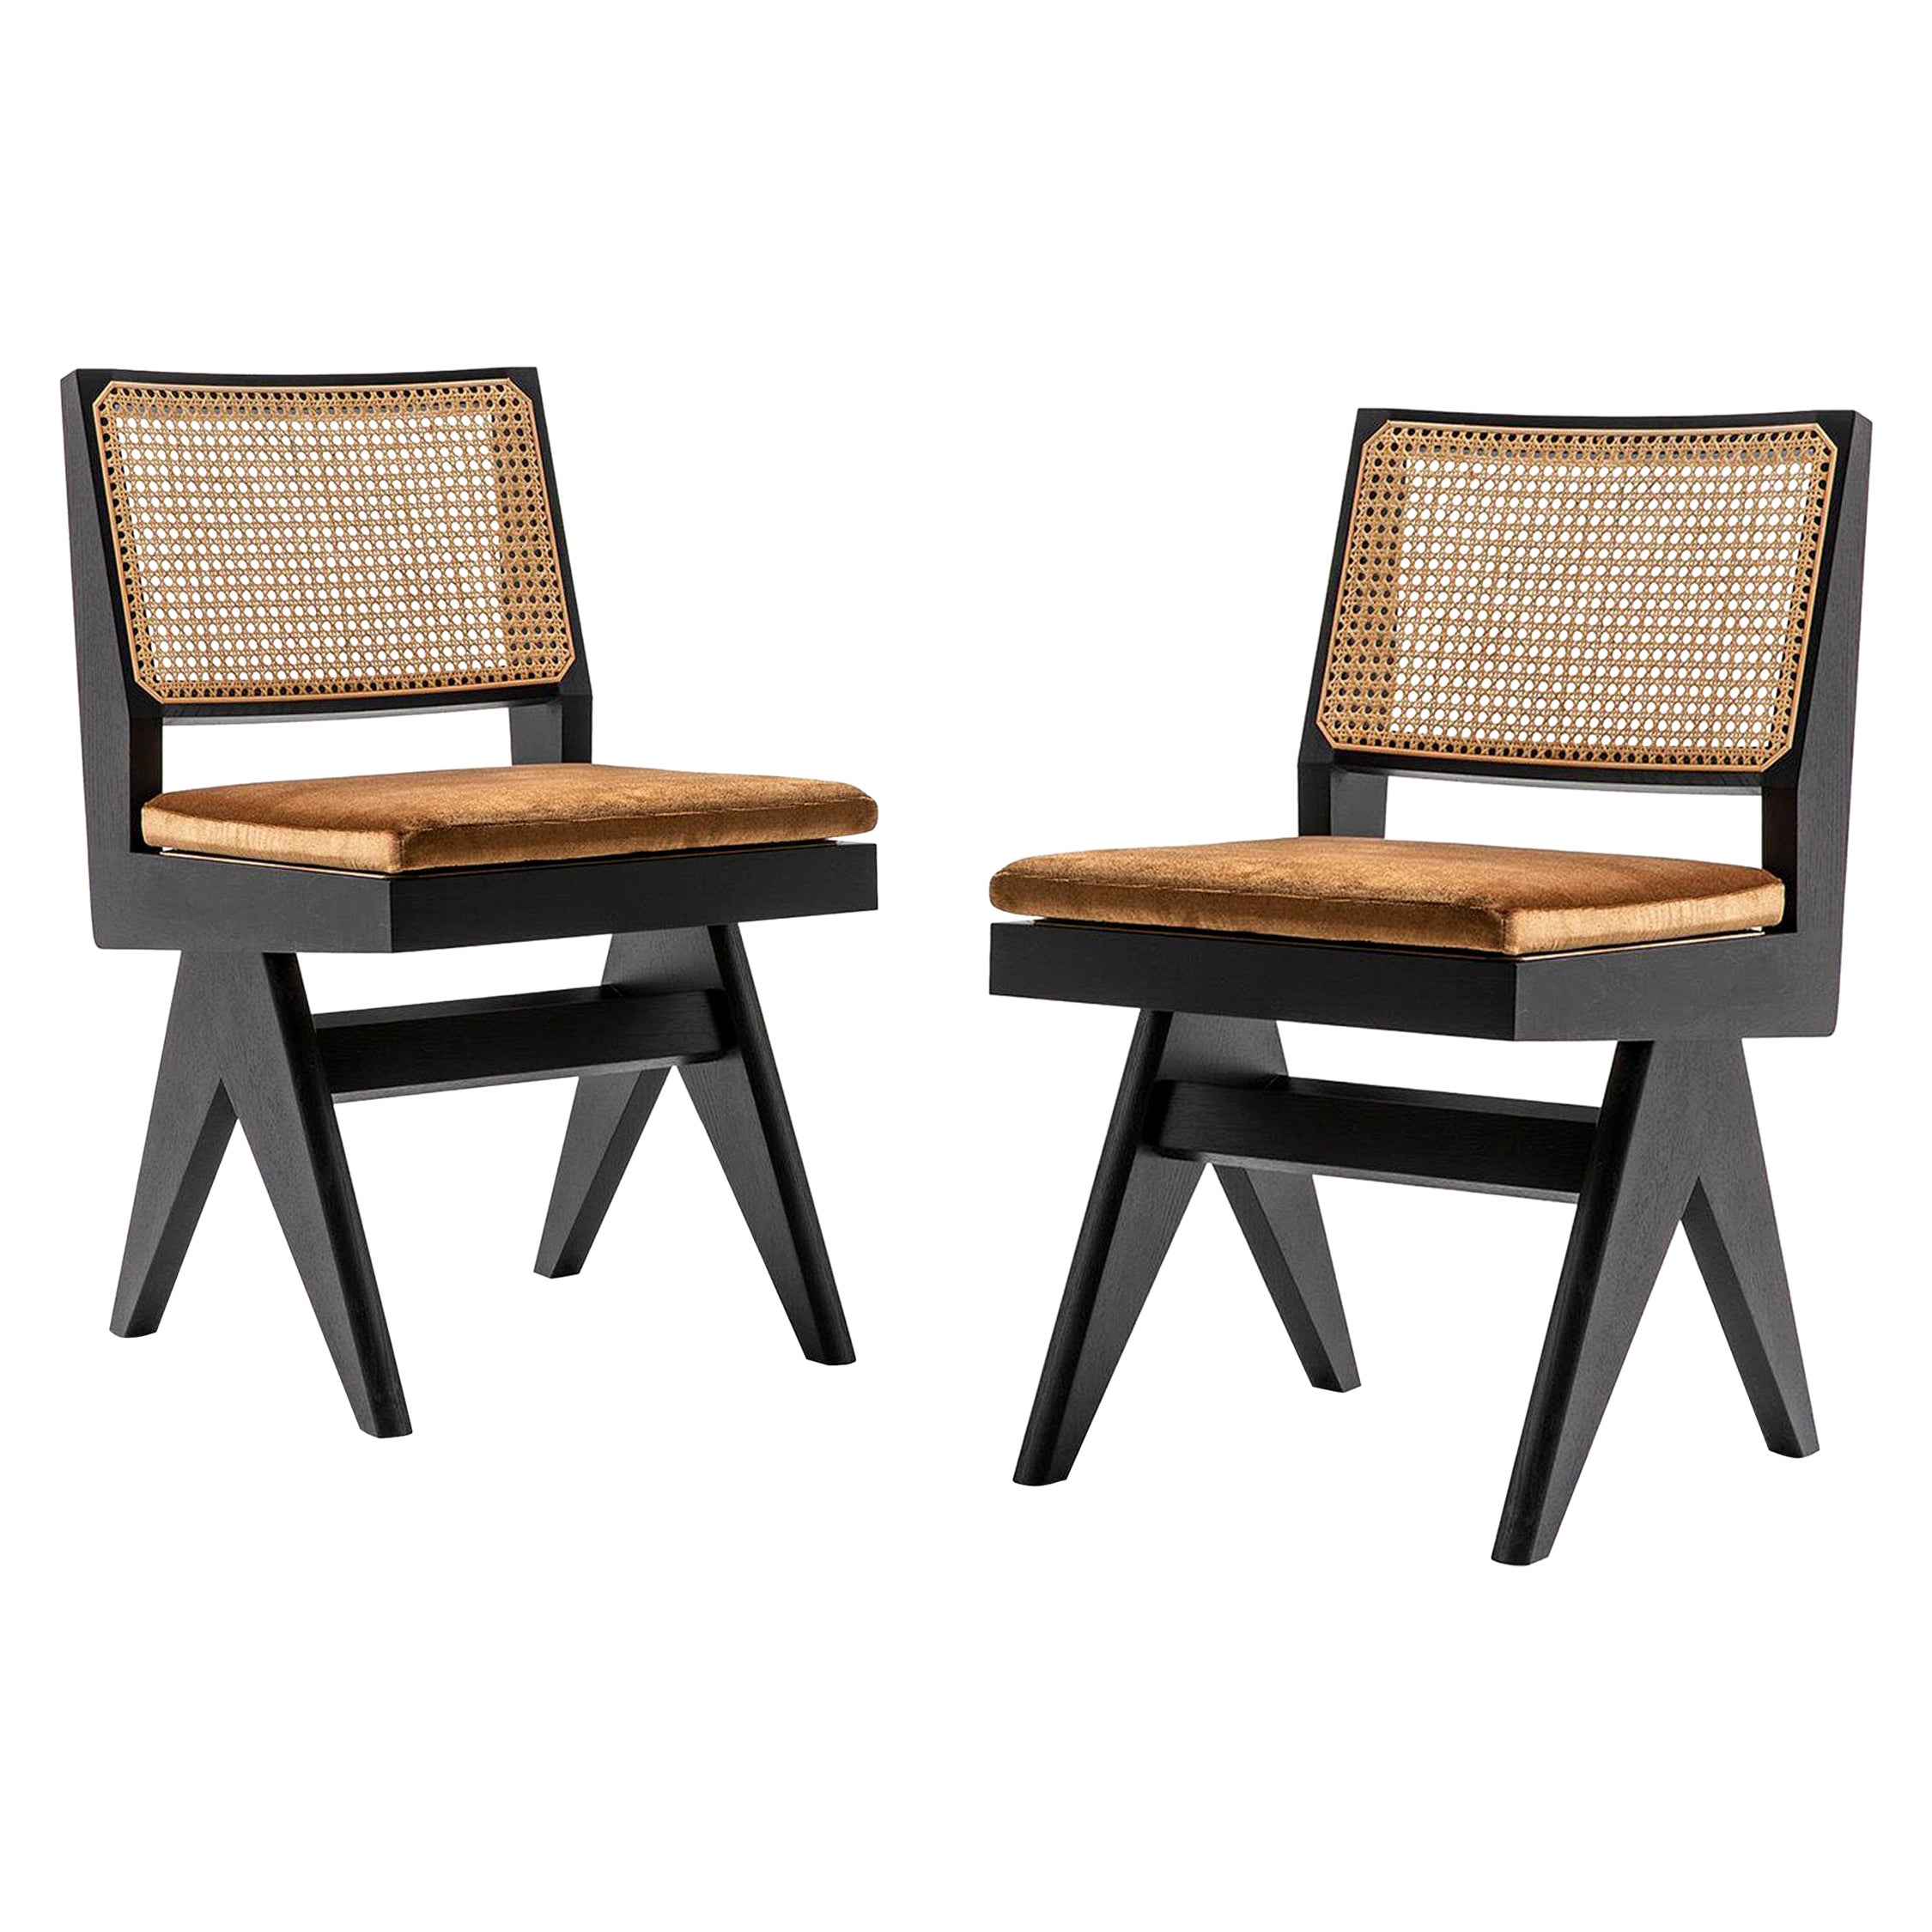 Set aus vier Stühlen, Modell 055, entworfen von Pierre Jeanneret um 1950, neu aufgelegt im Jahr 2019.
Hergestellt von Cassina in Italien.

Dieser Stuhl ist einer der bekanntesten im Capitol Complex von Chandigarh, der überall in den Büros des